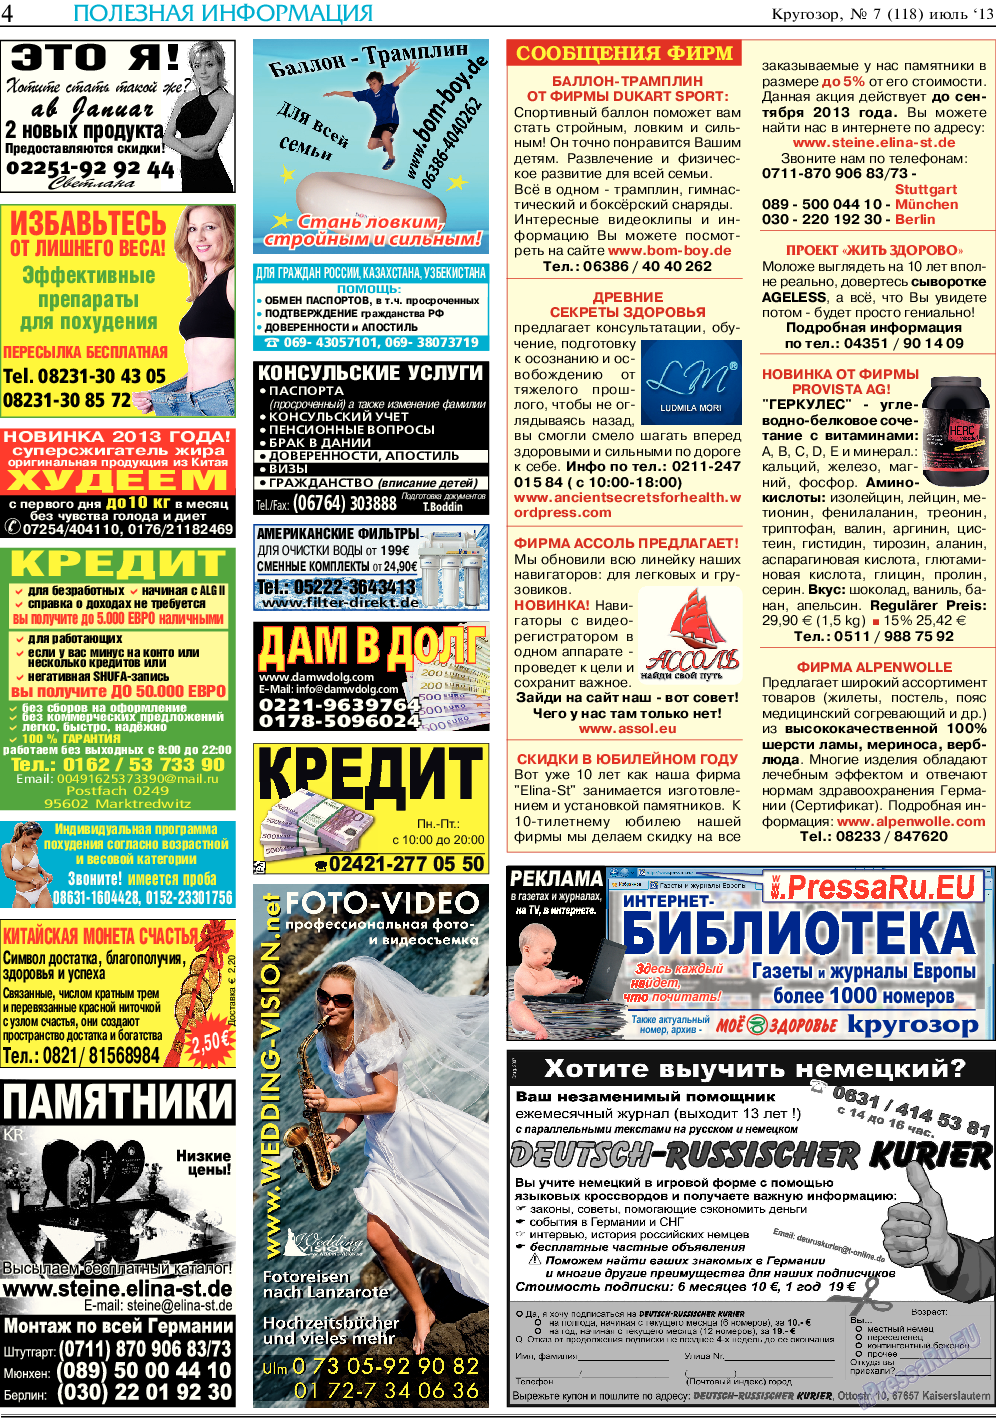 Кругозор, газета. 2013 №7 стр.4